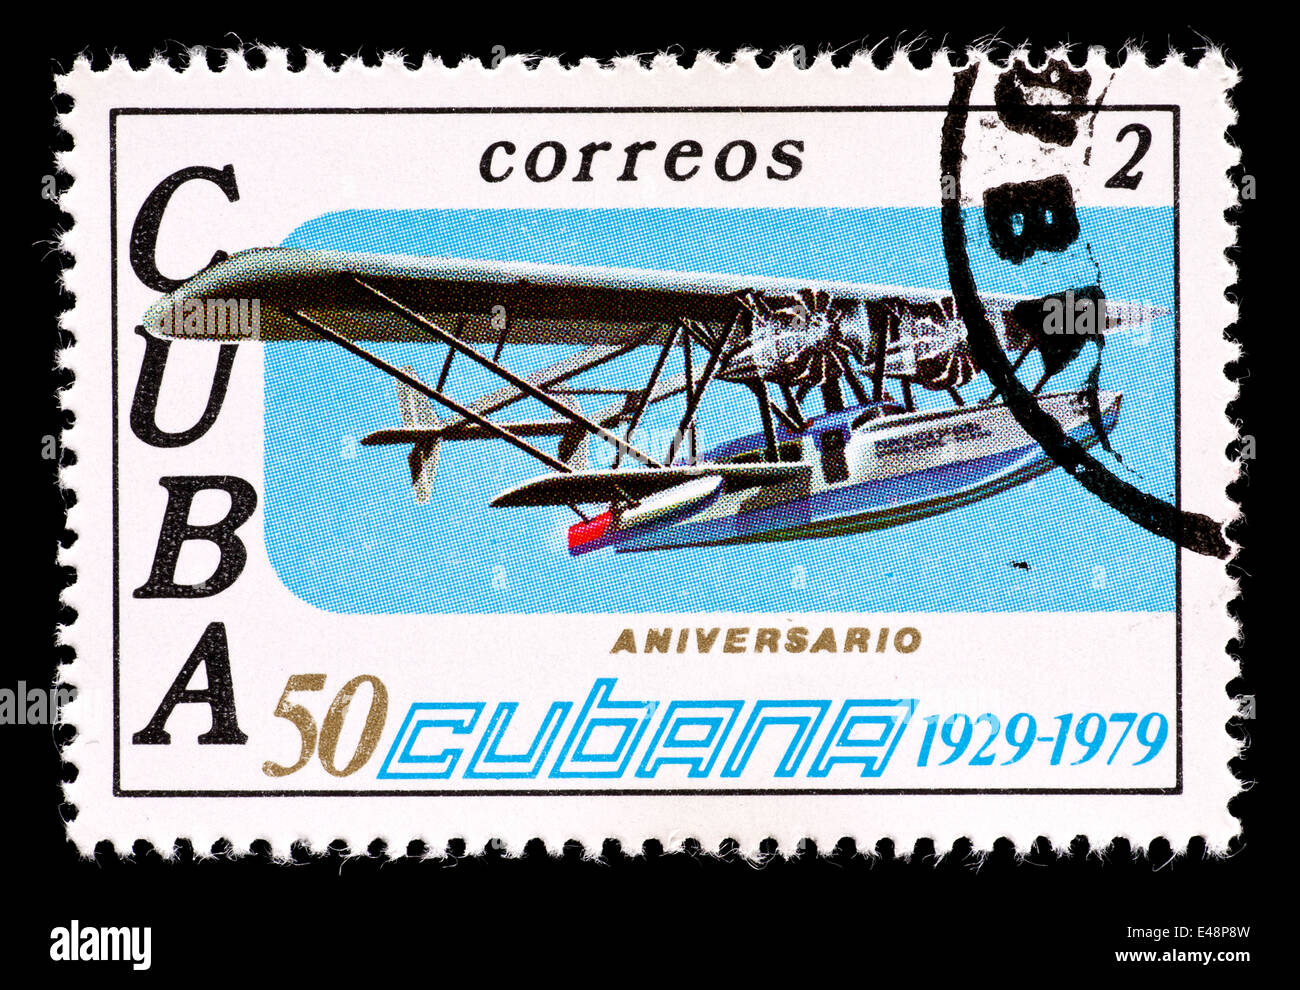 Timbre-poste de Cuba représentant un avion de la mer, pour la 50 ème anniversaire de Cubana de Aviación S.A. Banque D'Images